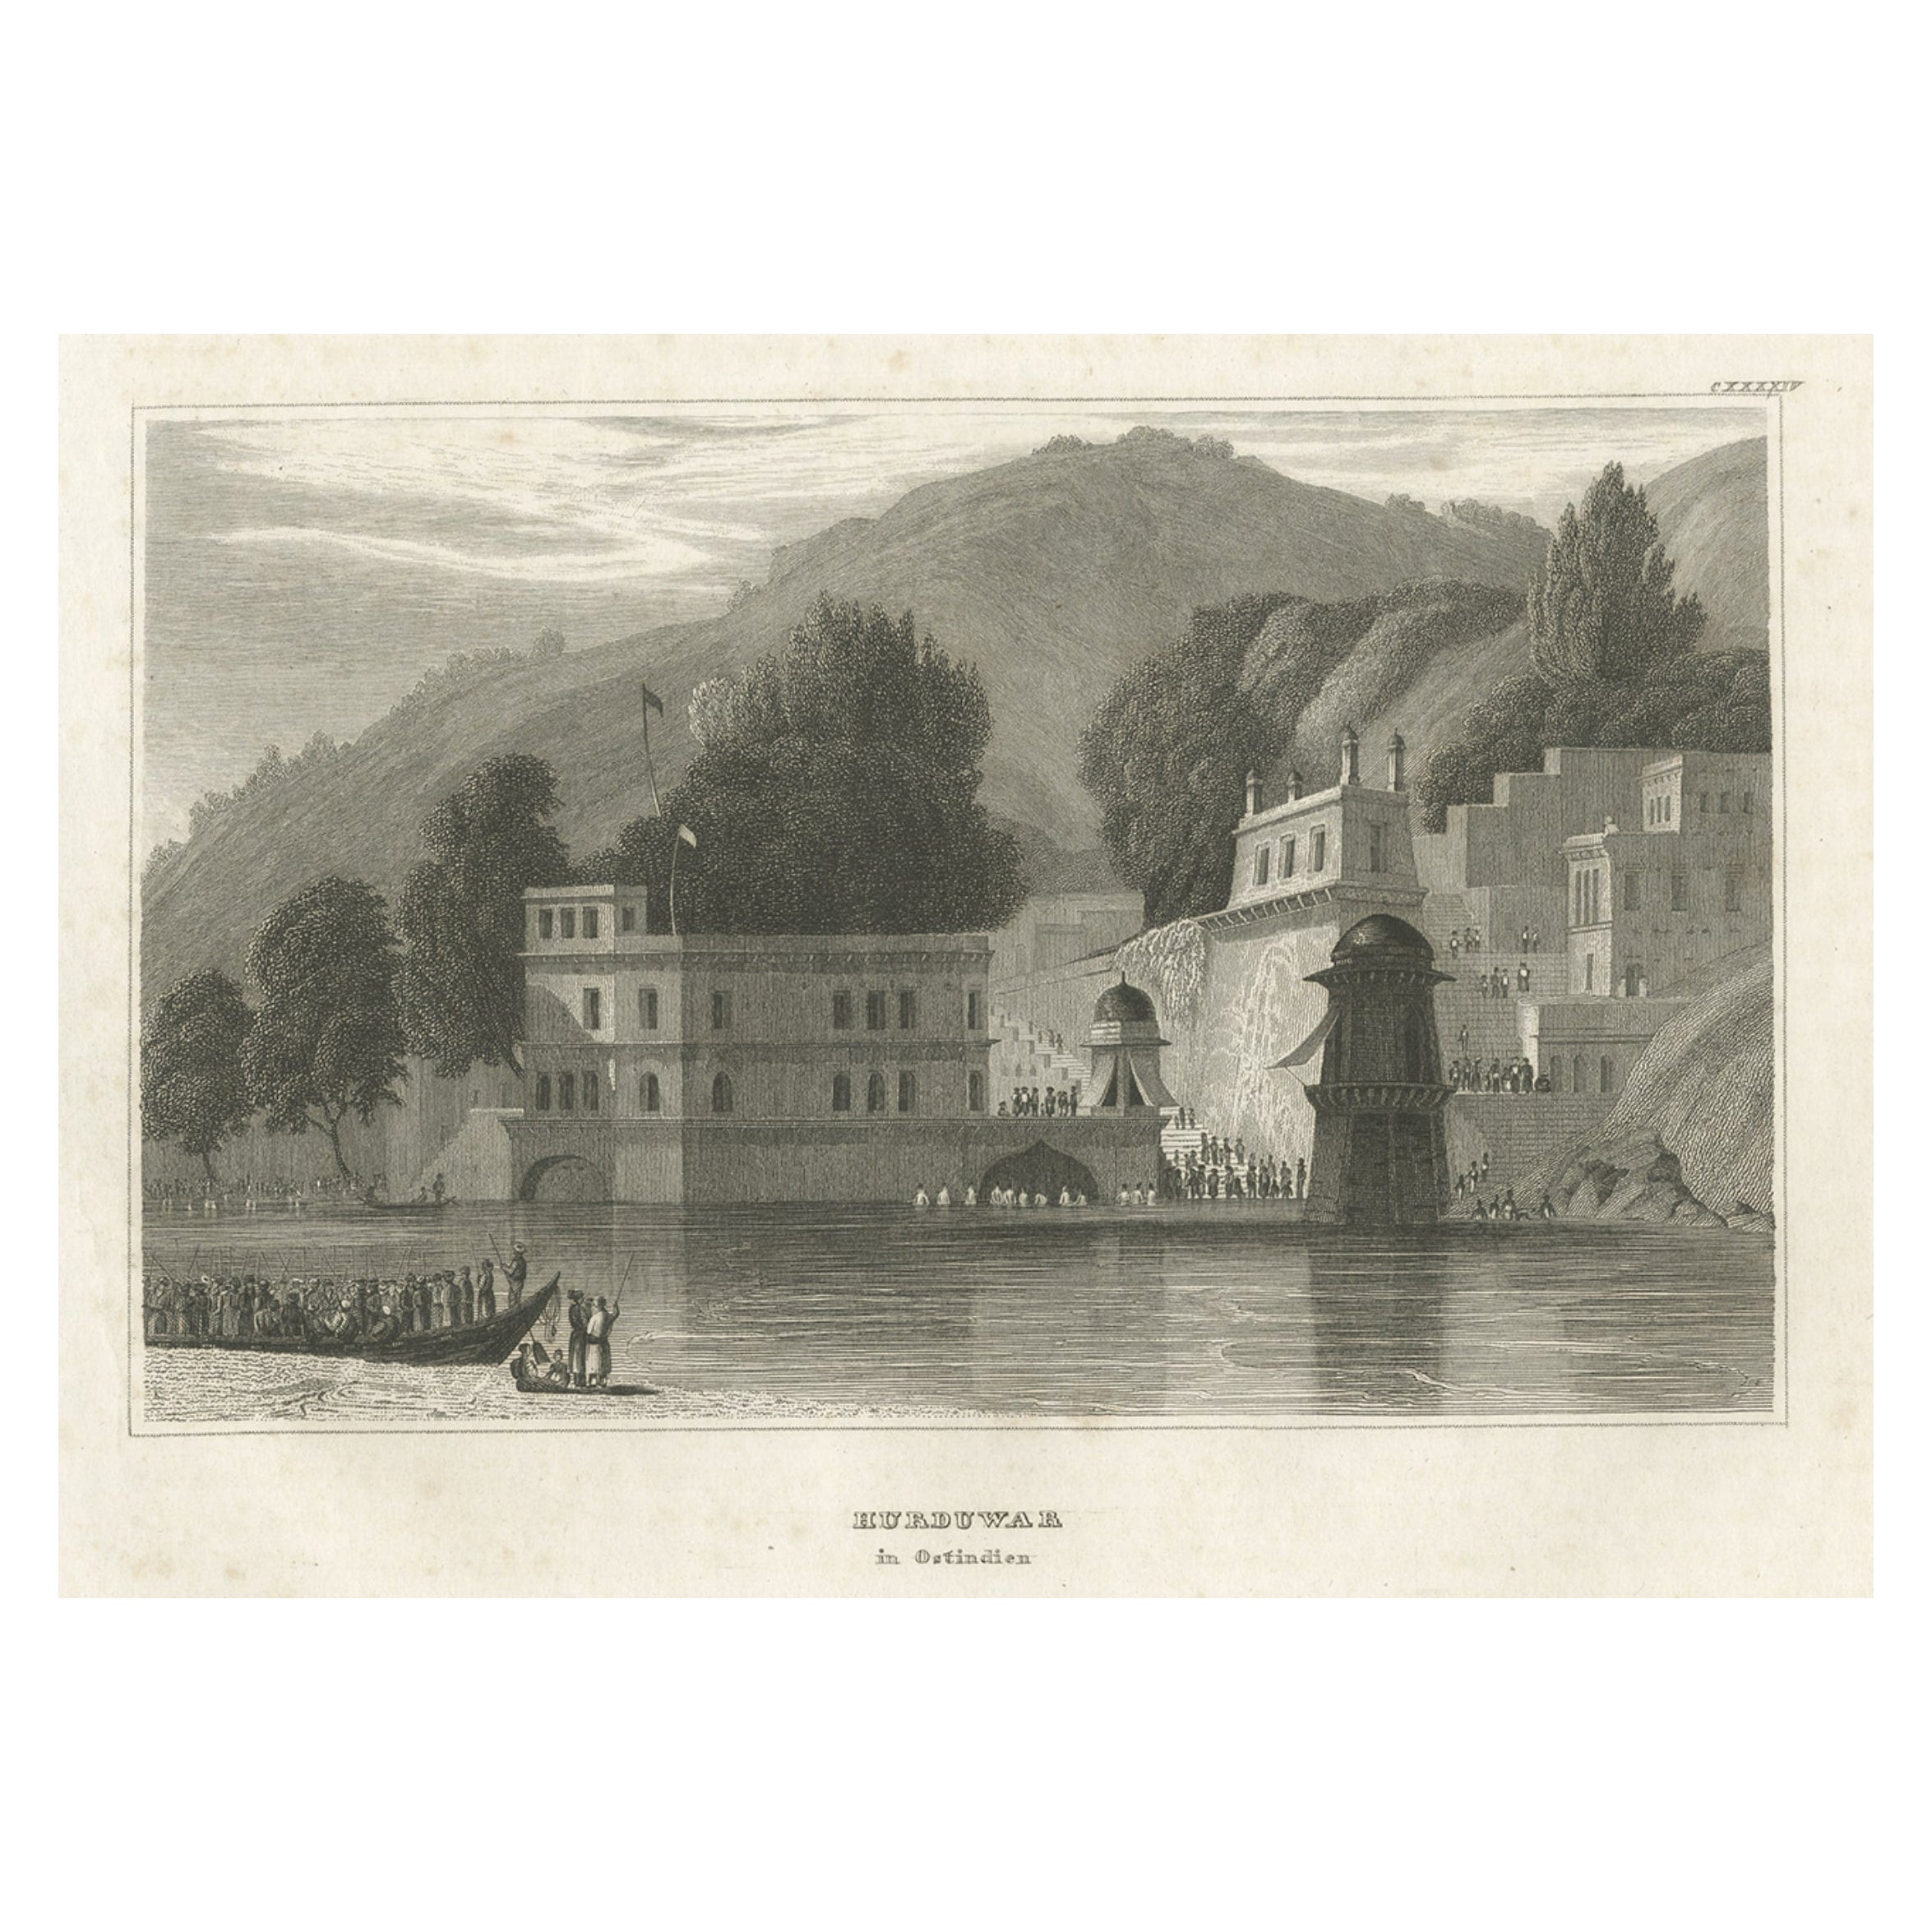 Impression ancienne de la ville de Haridwar à Uttarakhand, Inde, 1837